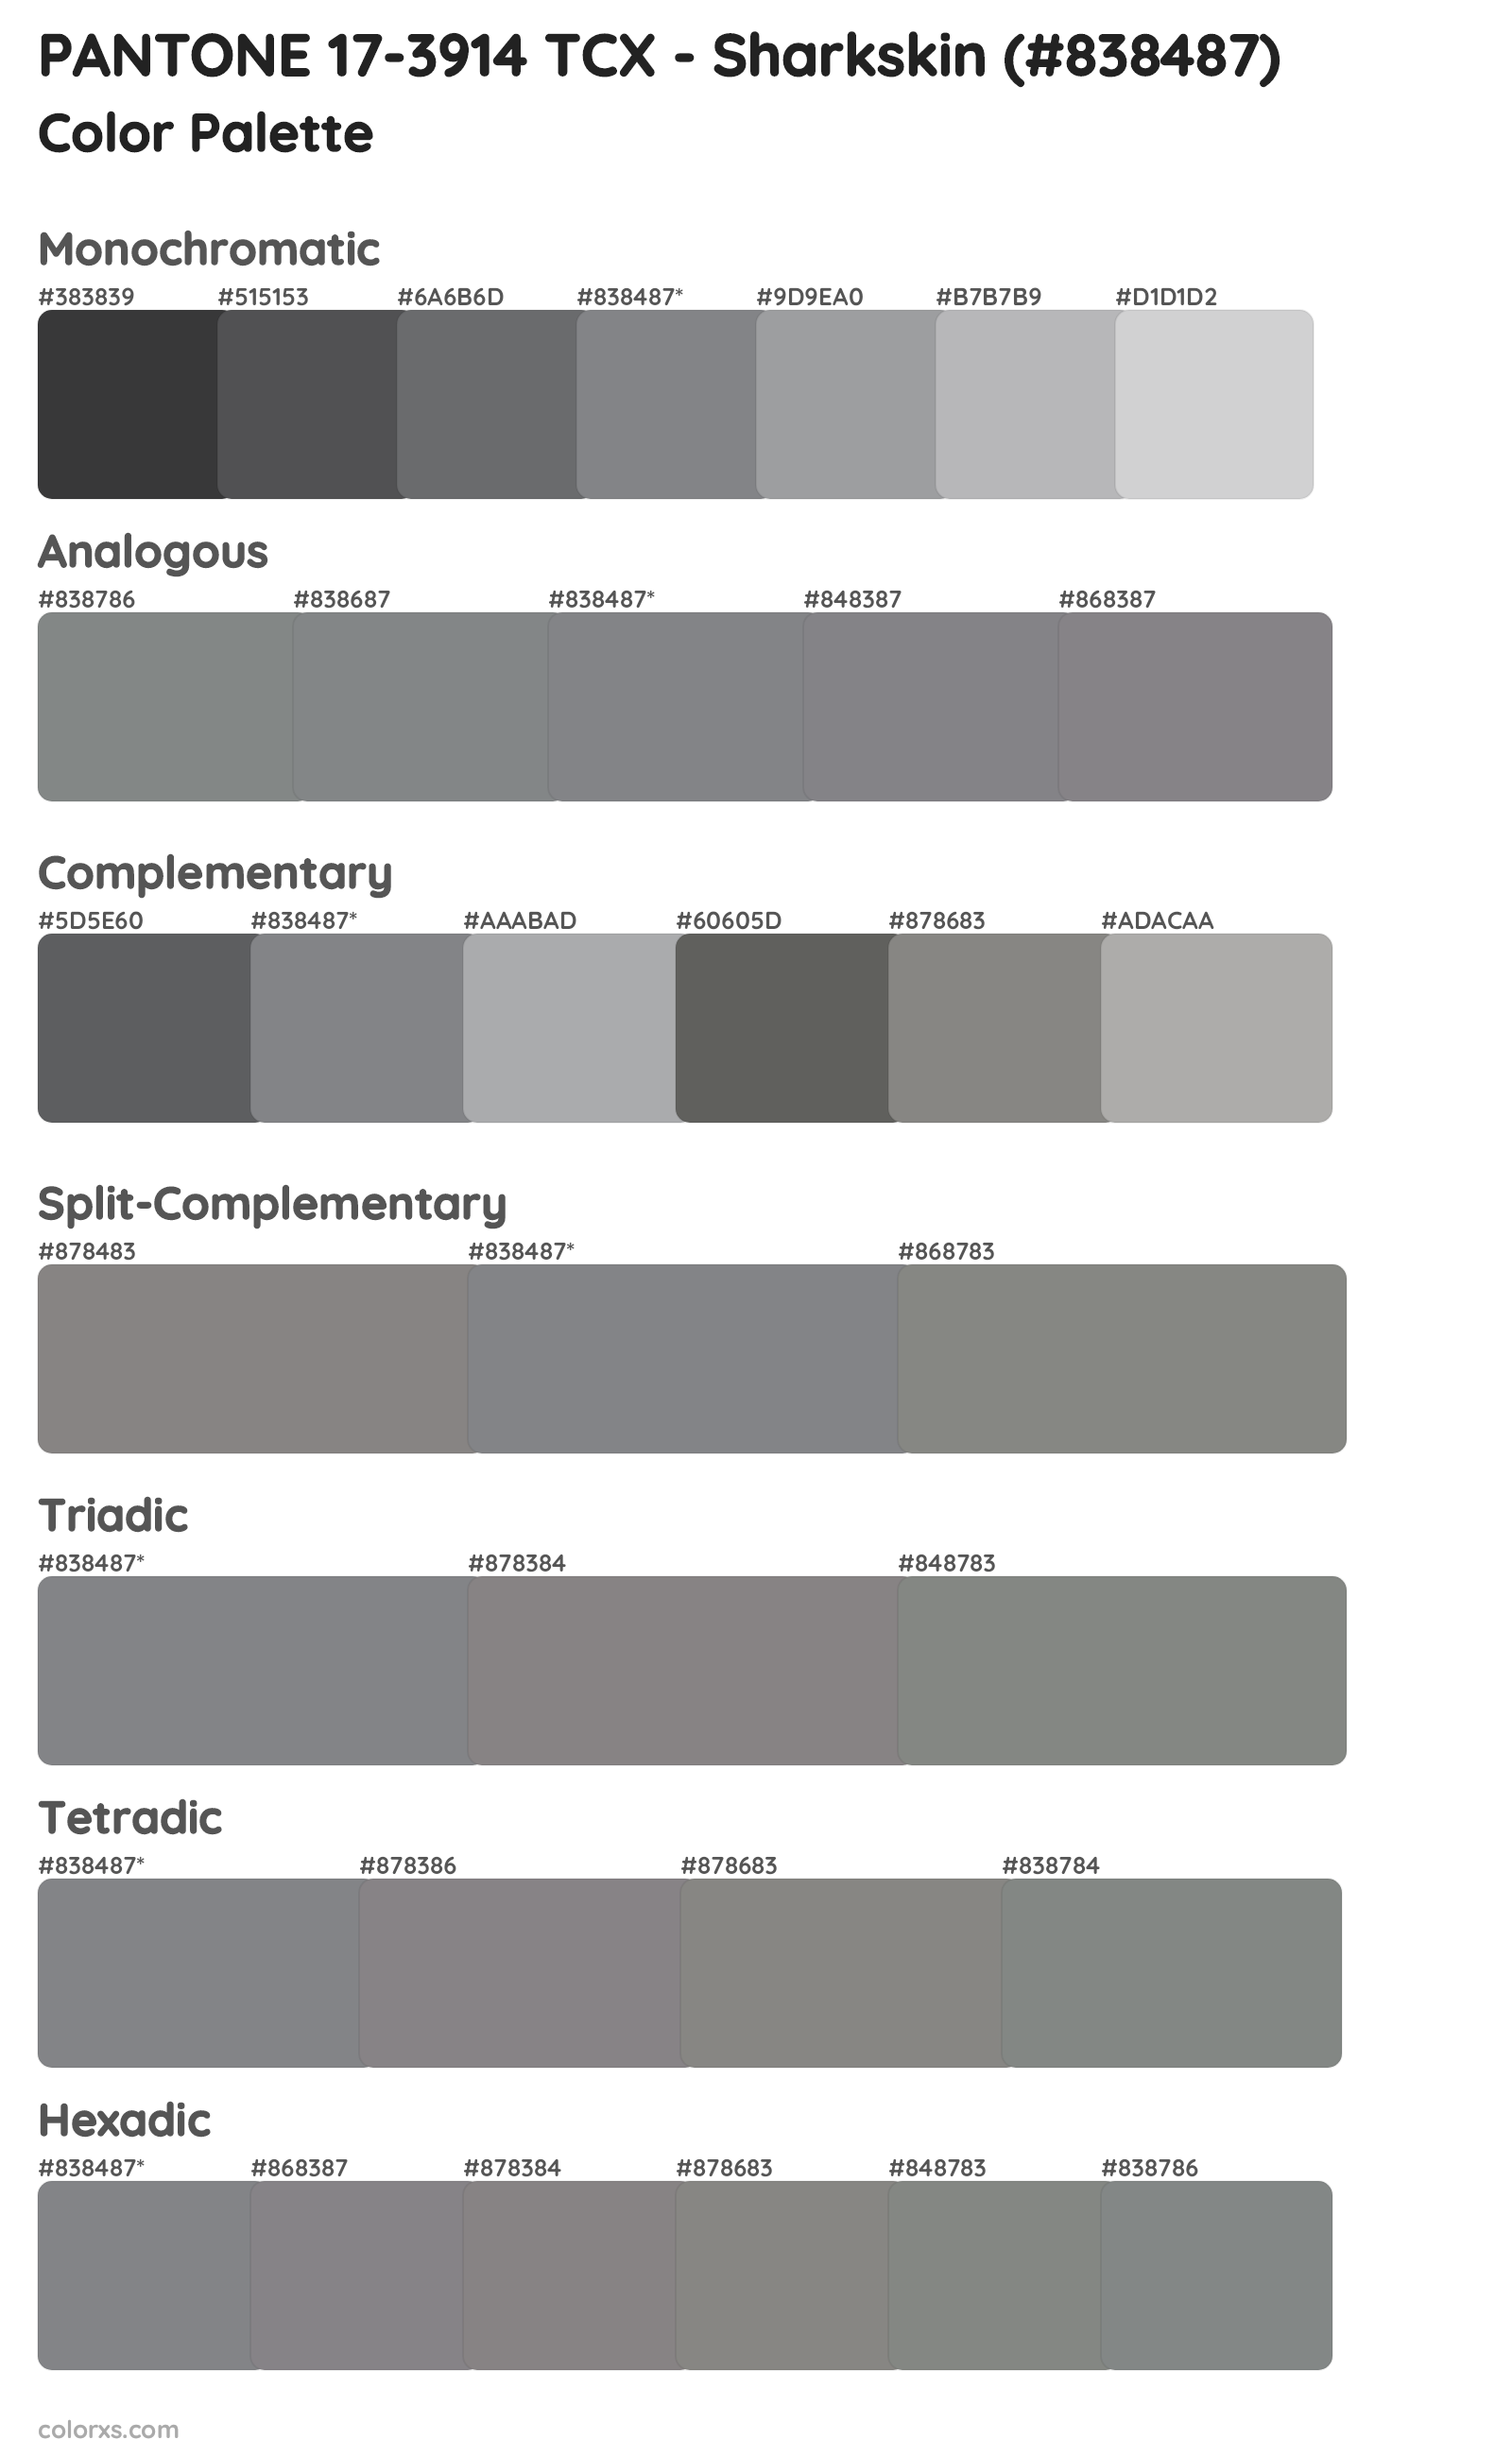 PANTONE 17-3914 TCX - Sharkskin Color Scheme Palettes